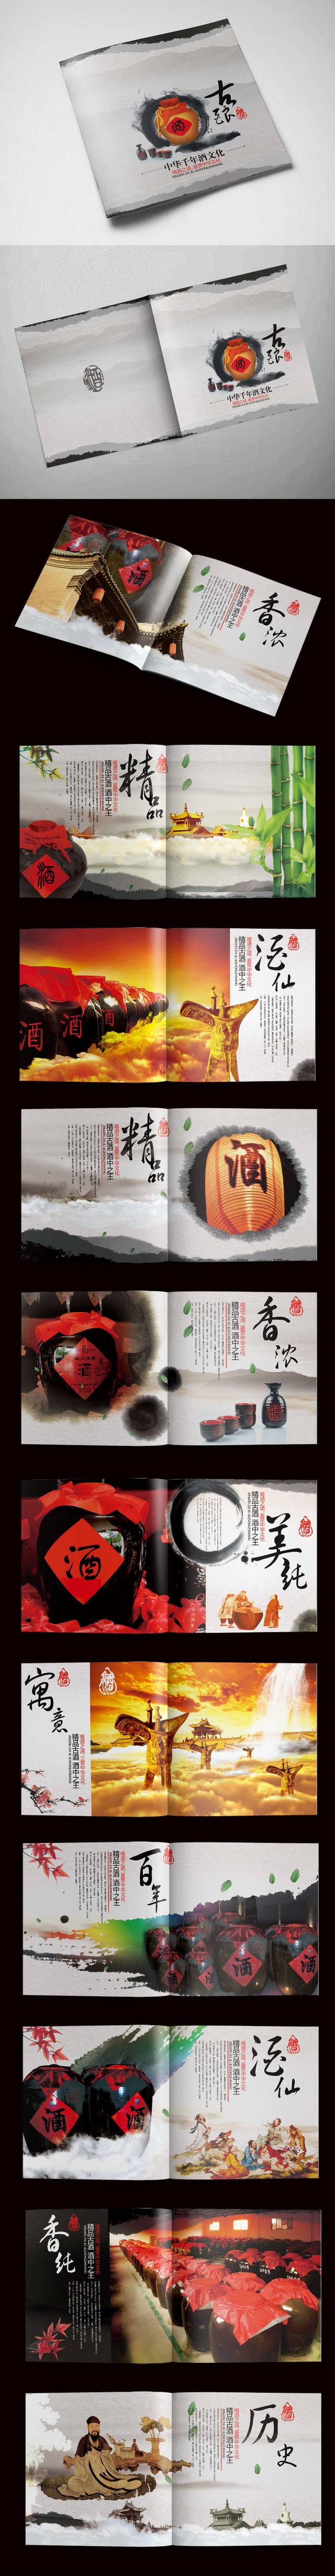 水墨中国风酒画册